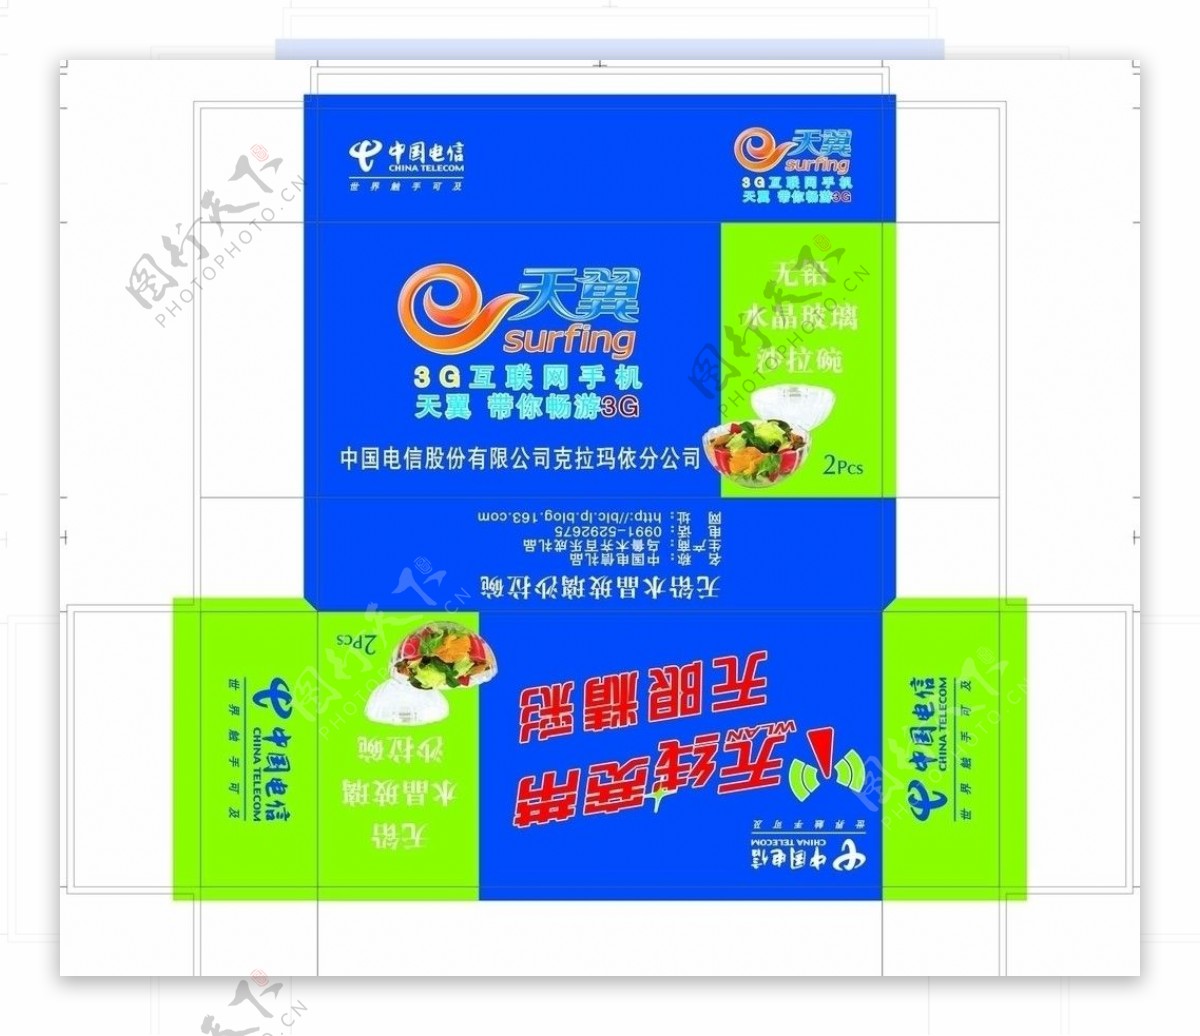 中国电信盒子图片